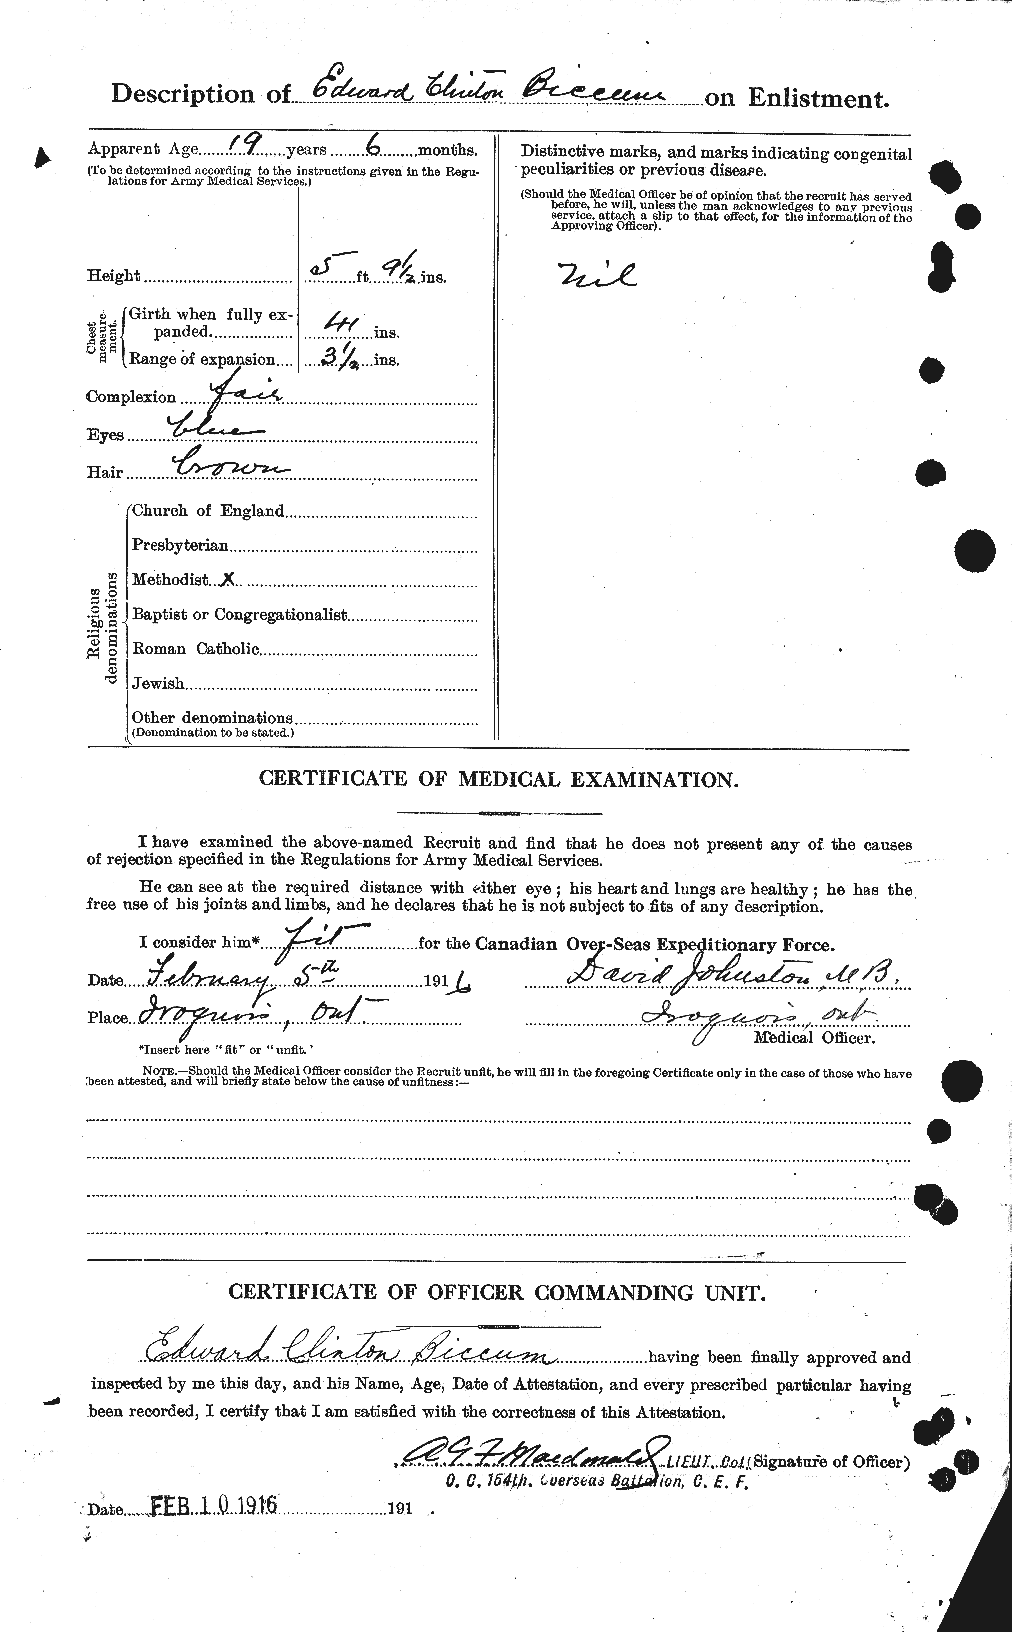 Dossiers du Personnel de la Première Guerre mondiale - CEC 245007b